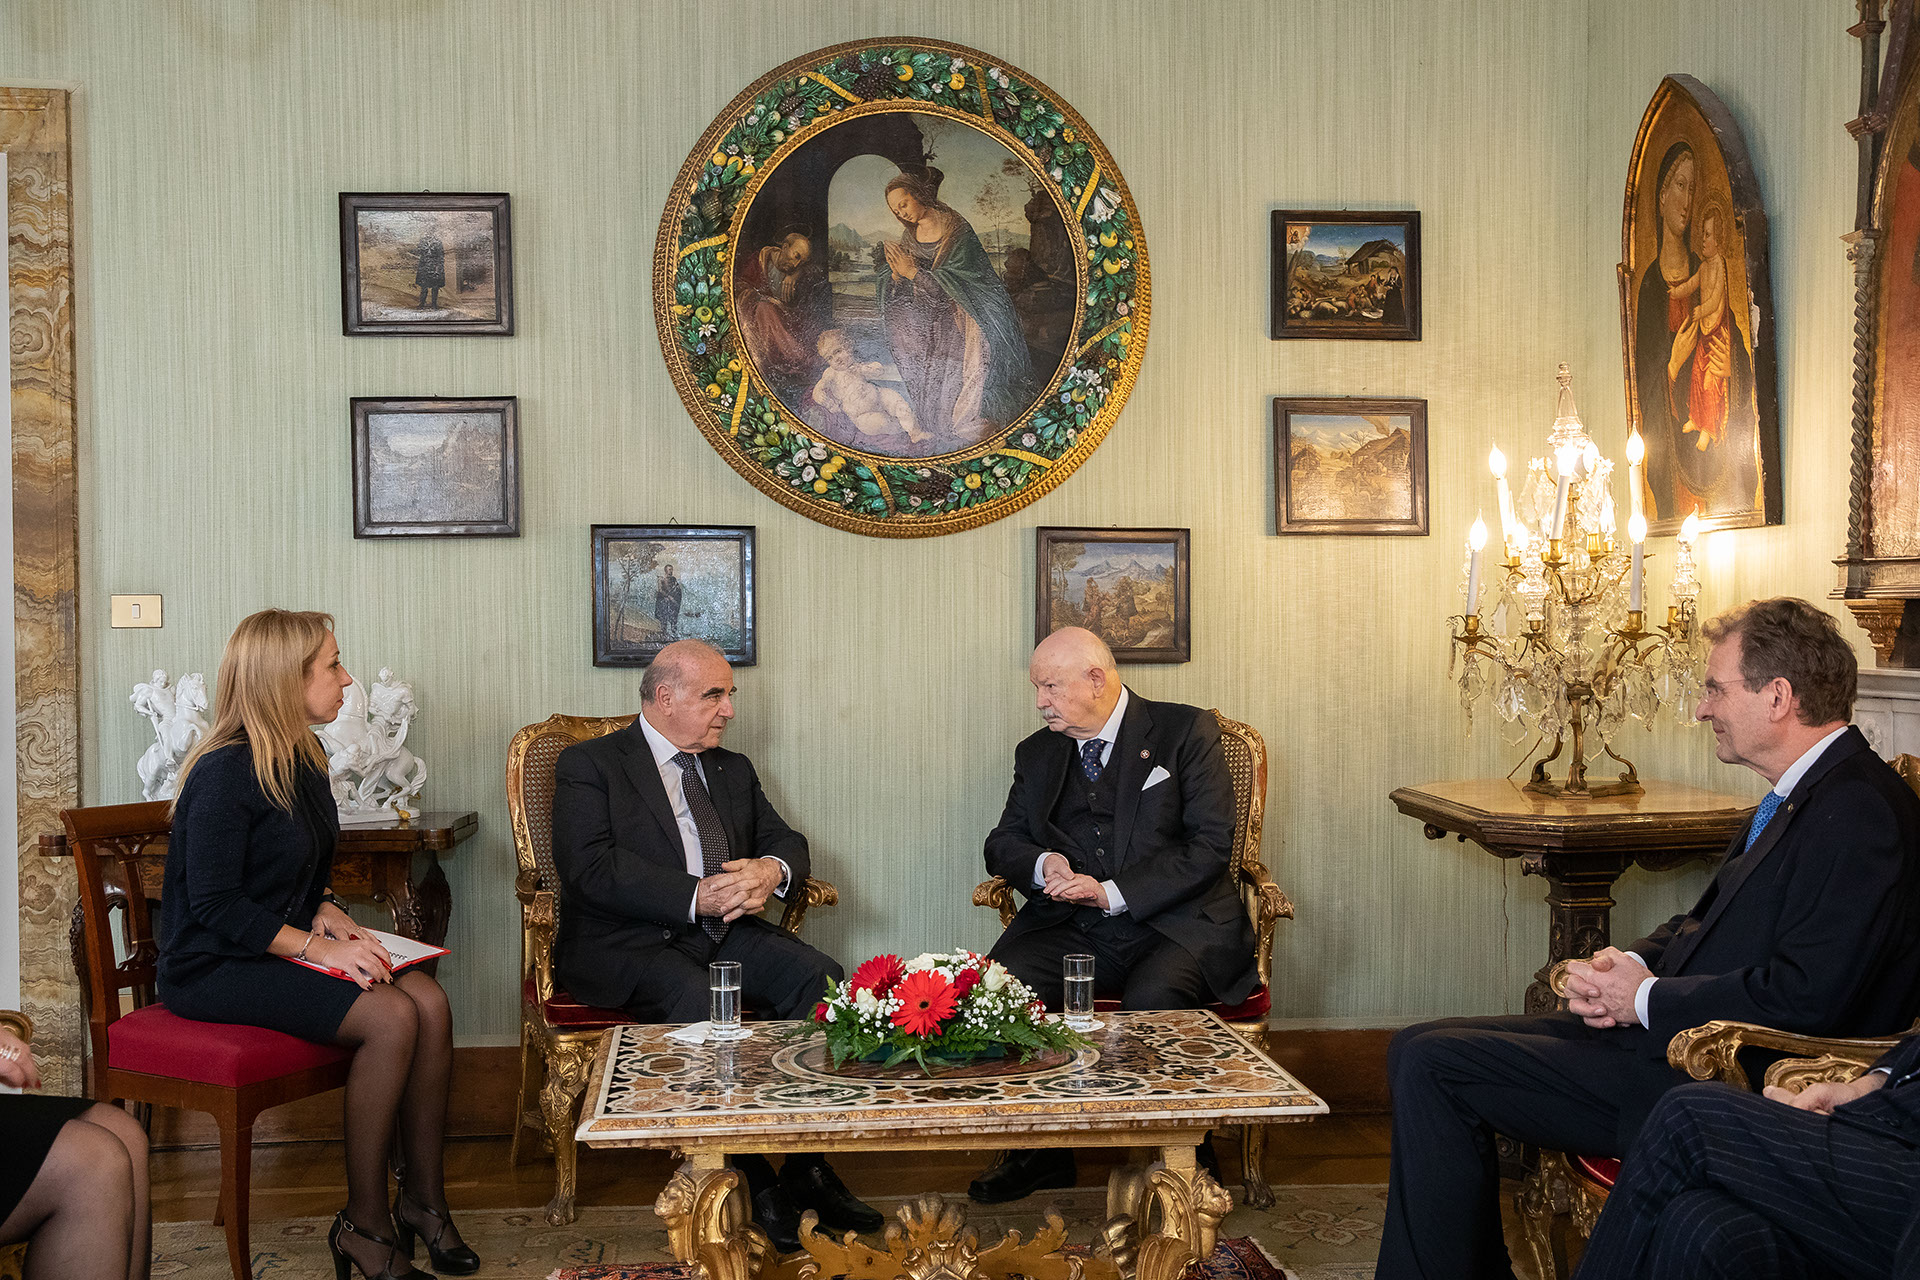 Le Président de la République de Malte reçu par le Grand Maître.  Fra’ Giacomo Dalla Torre : liens historiques et vision commune